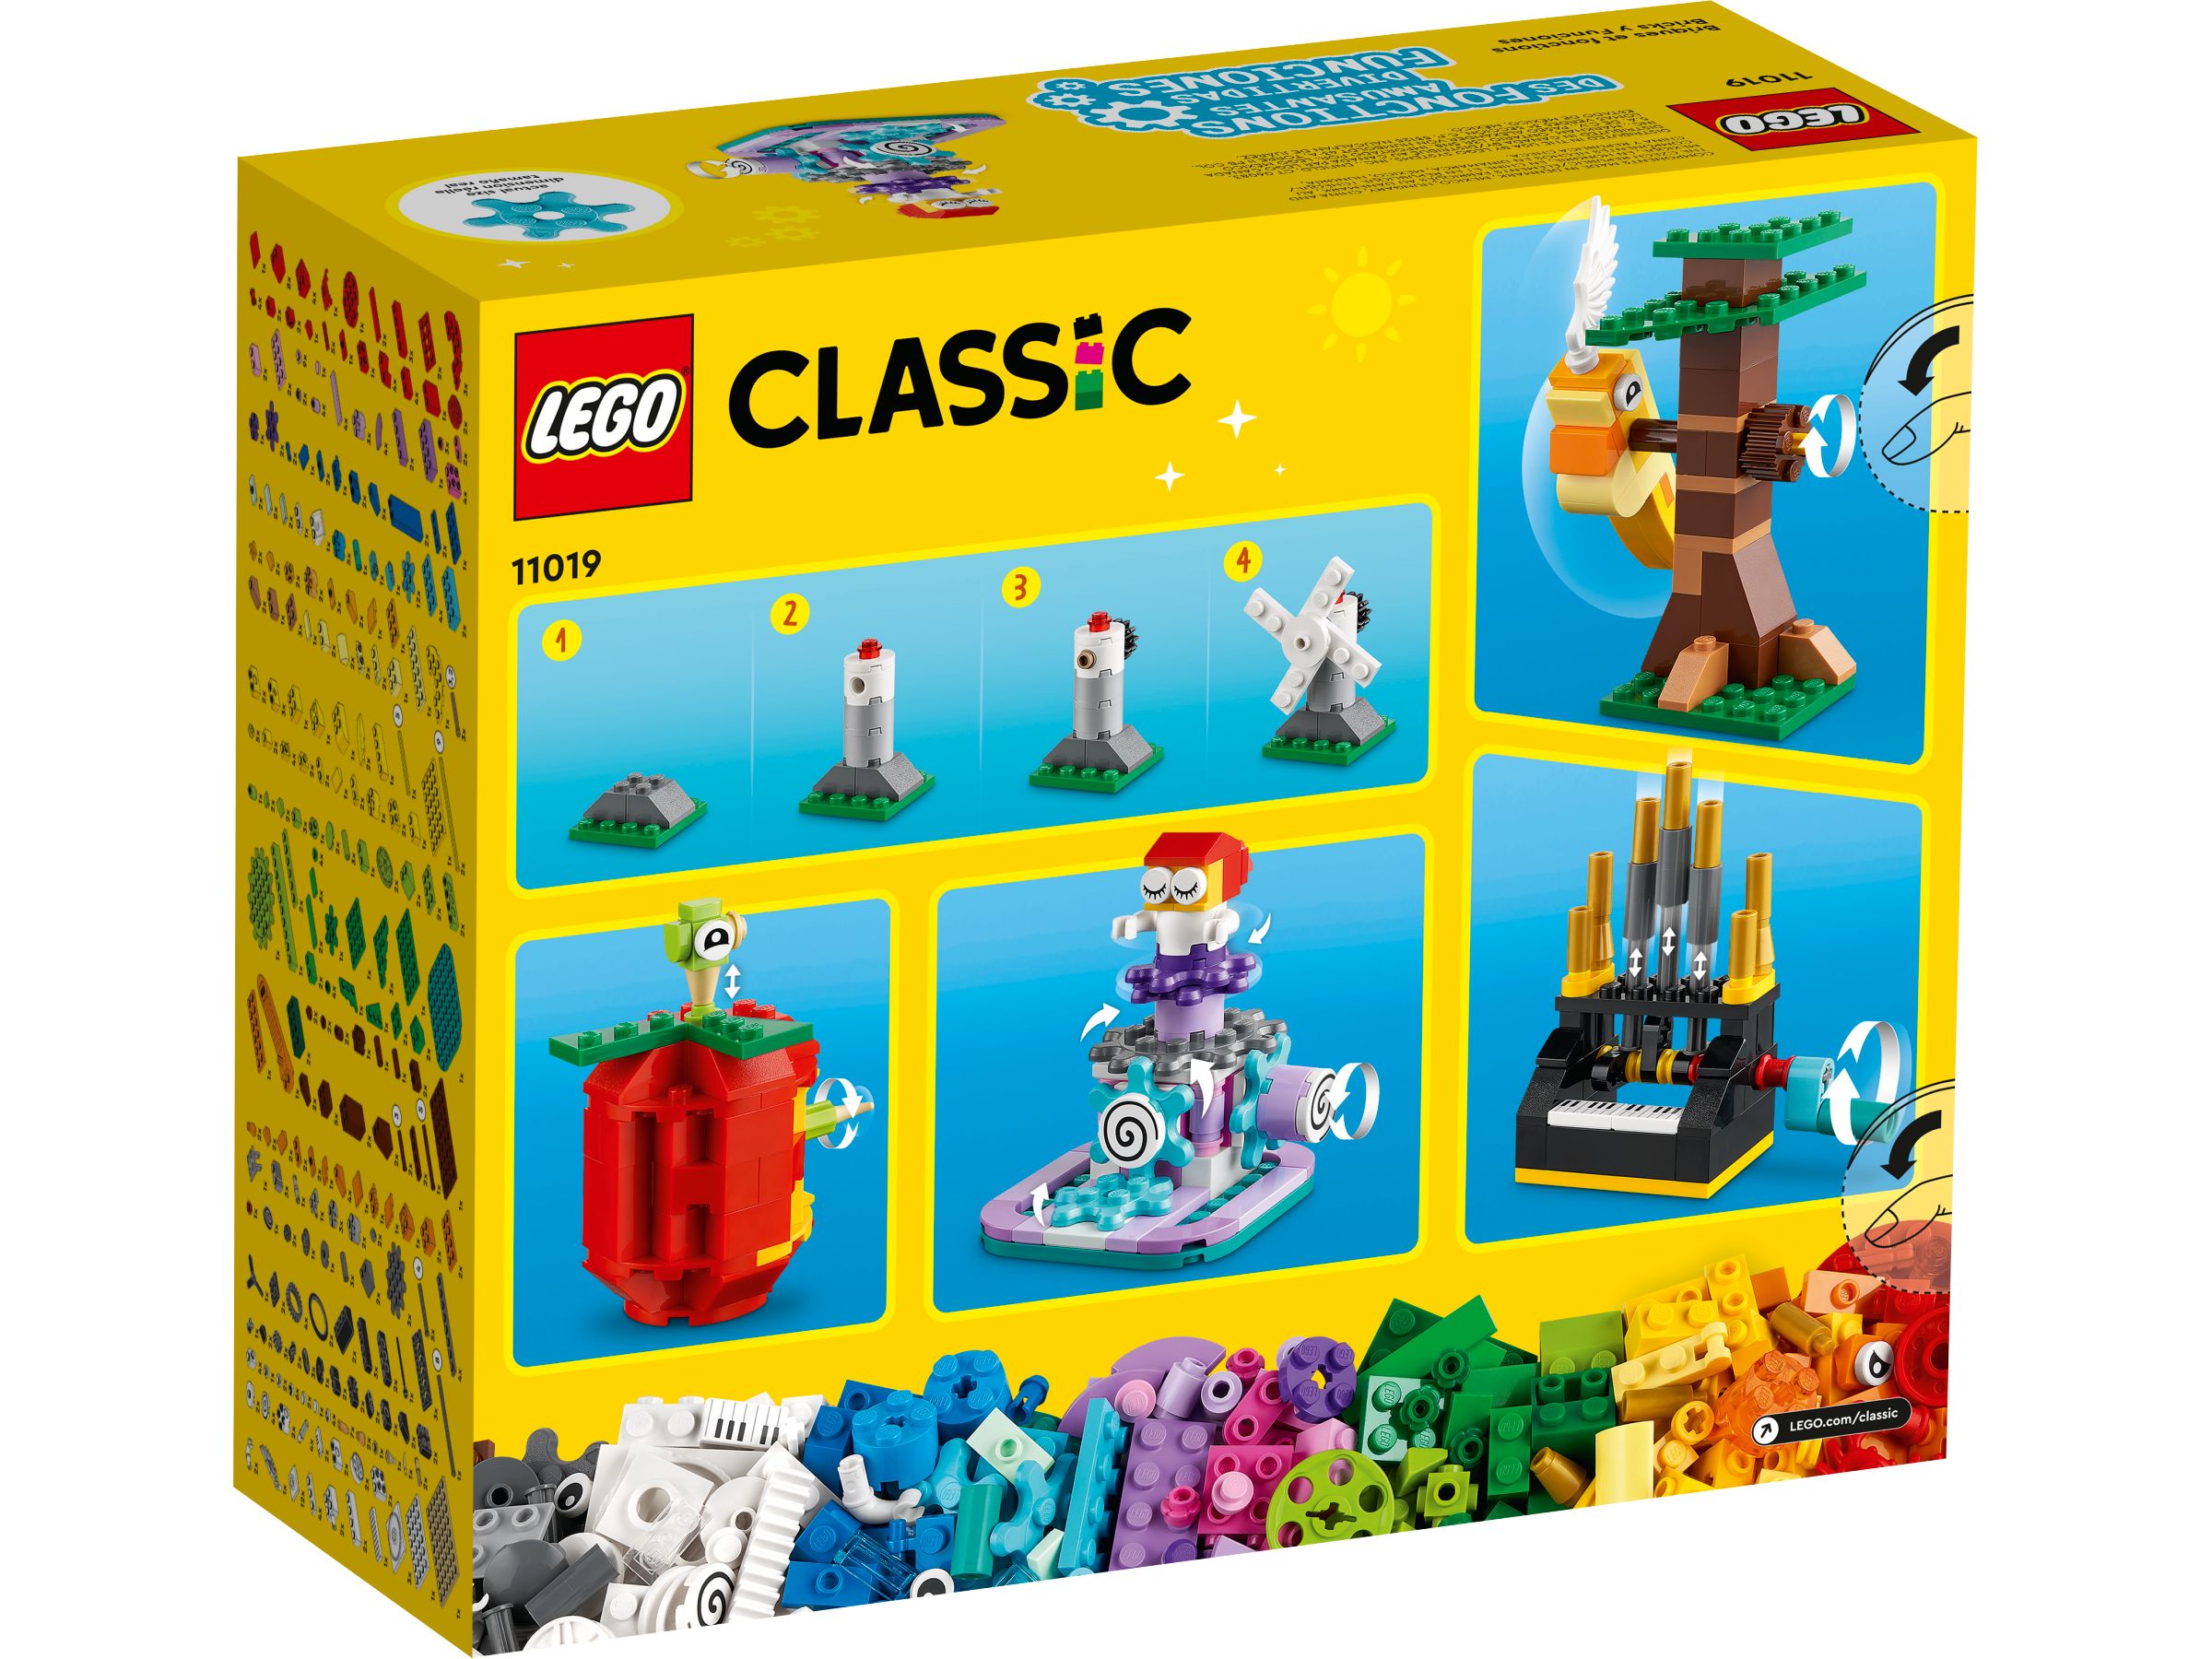 LEGO Classic 11019 Bausteine und Funktionen LEGO_11019_alt10.jpg